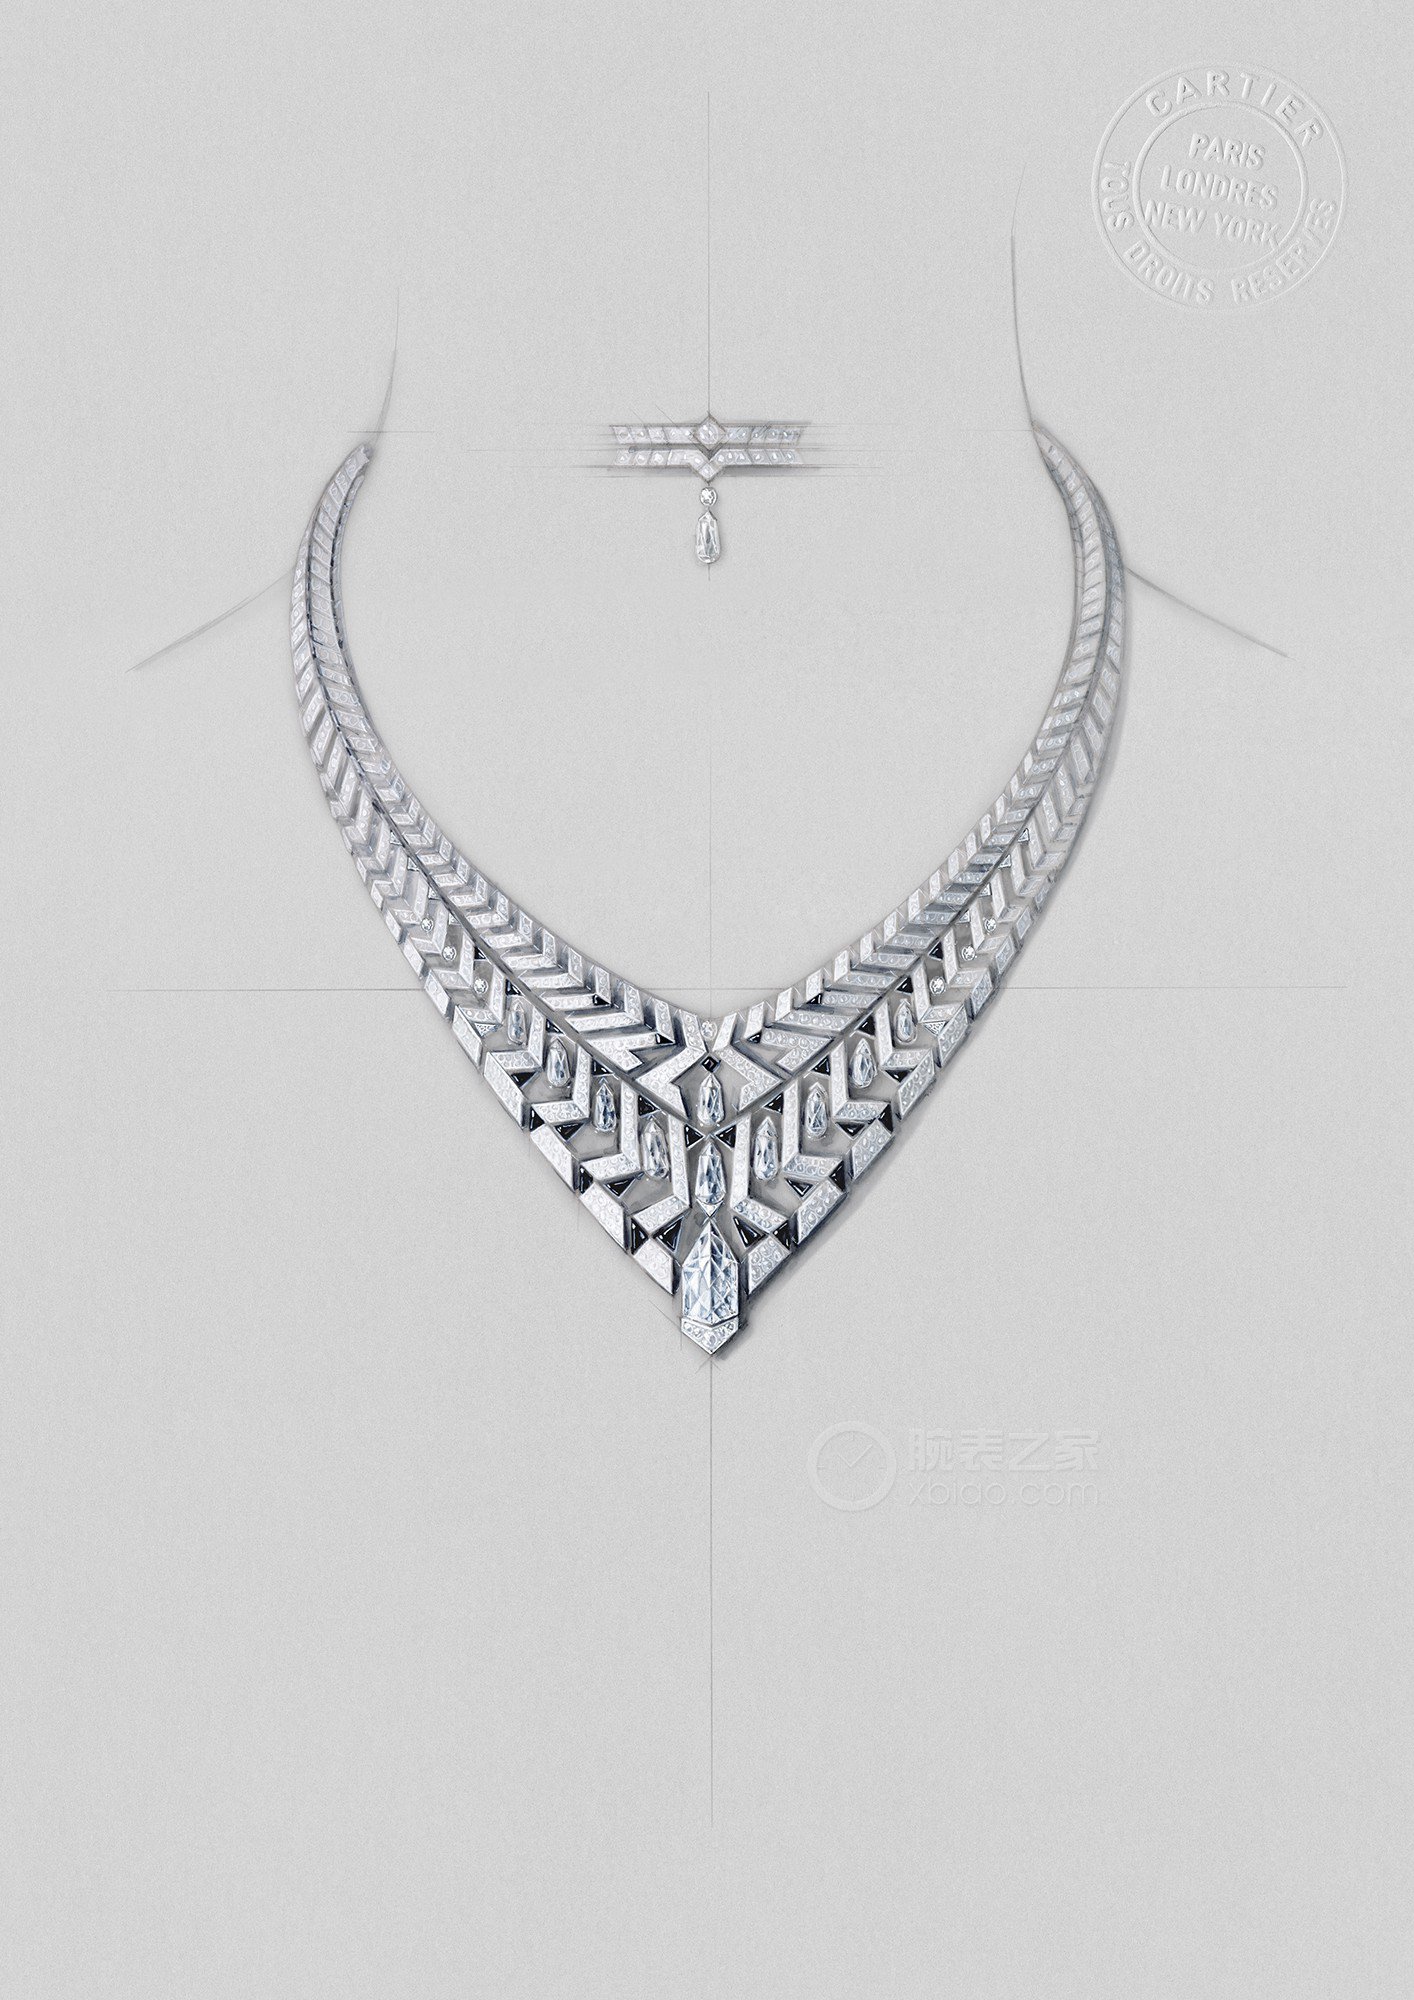 卡地亚LE VOYAGE RECOMMENCÉ高级珠宝系列CLAUSTRA高级珠宝项链项链